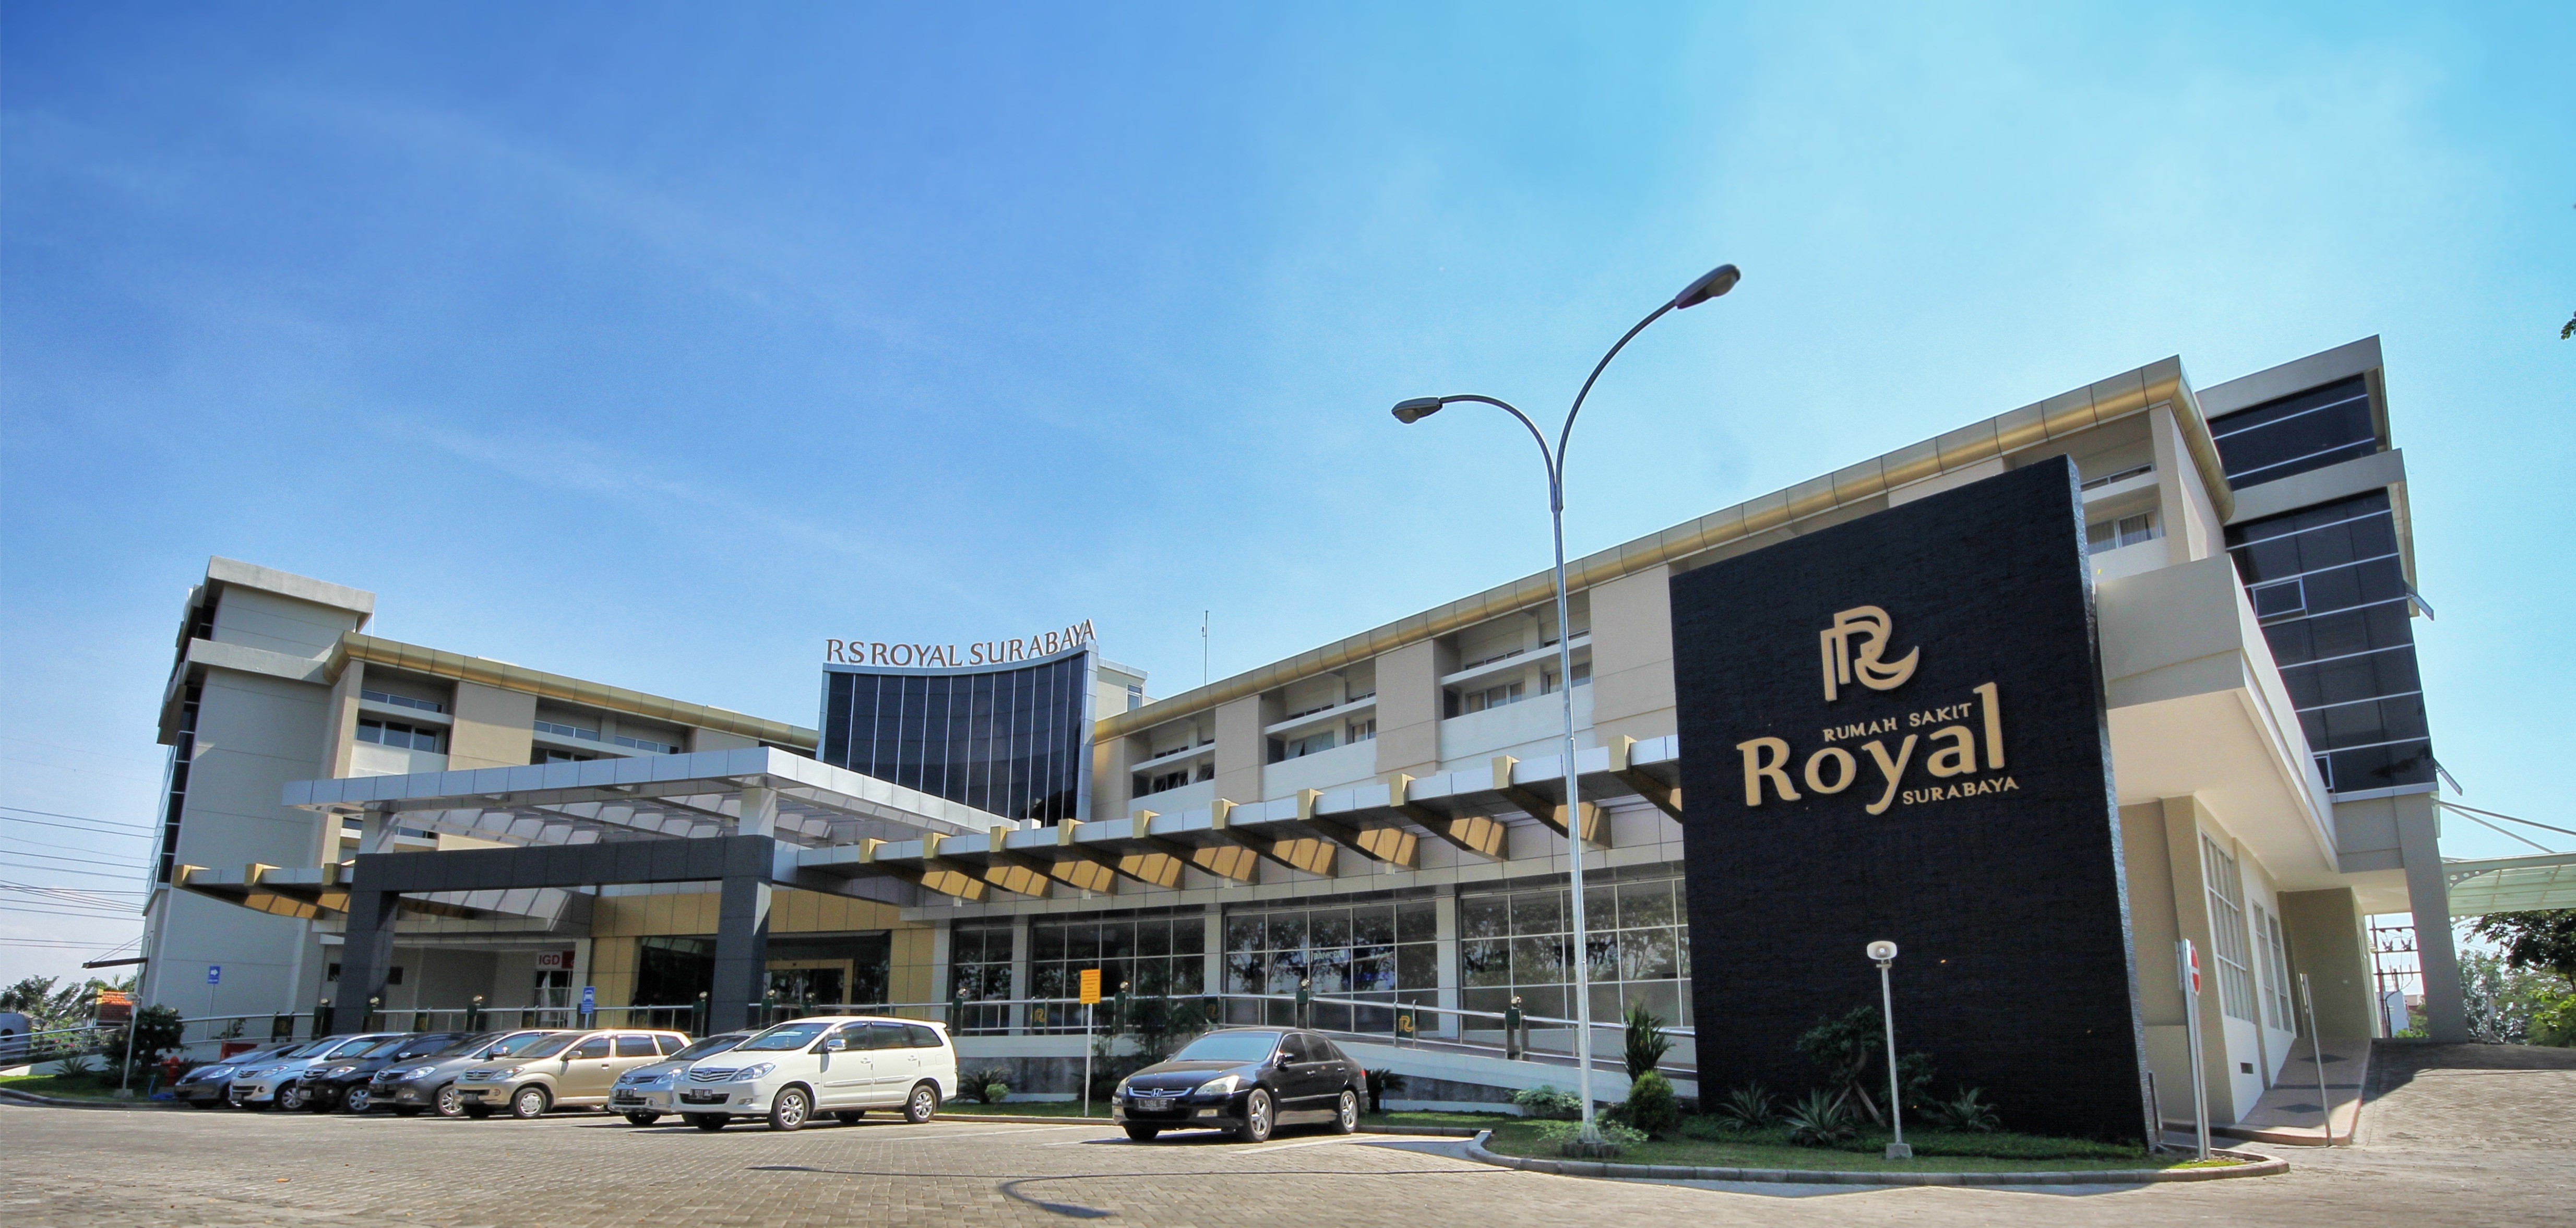 Rumah Sakit Rungkut Surabaya - KibrisPDR